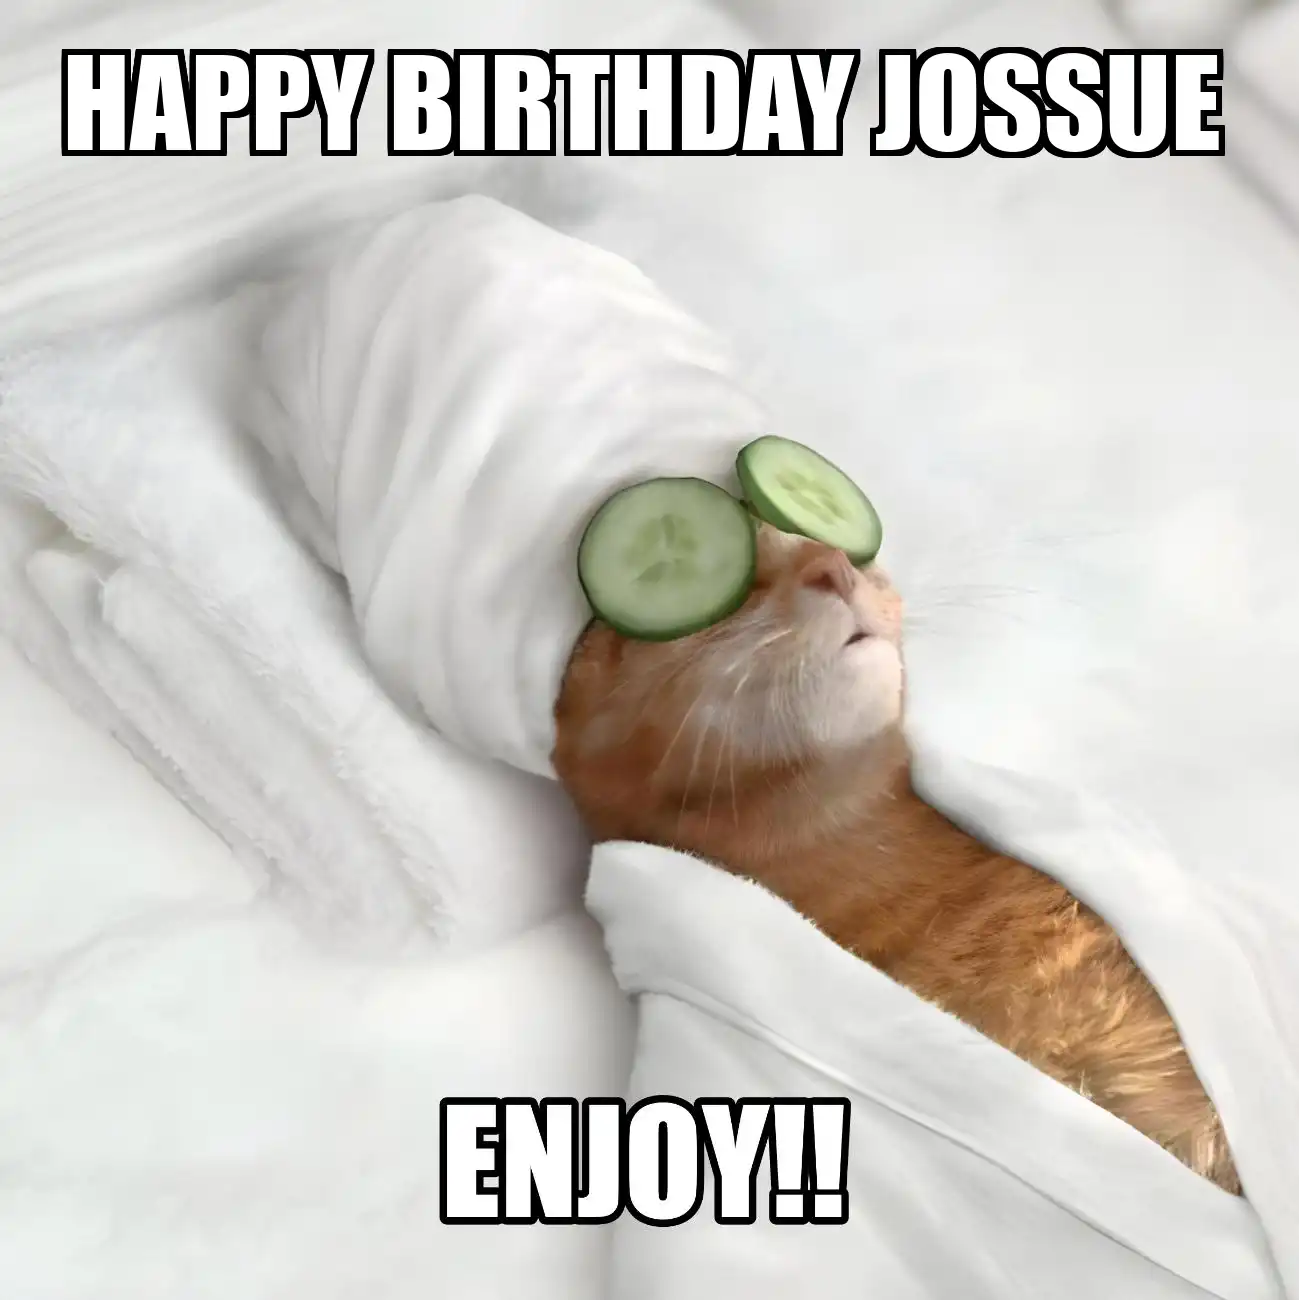 Happy Birthday Jossue Enjoy Cat Meme